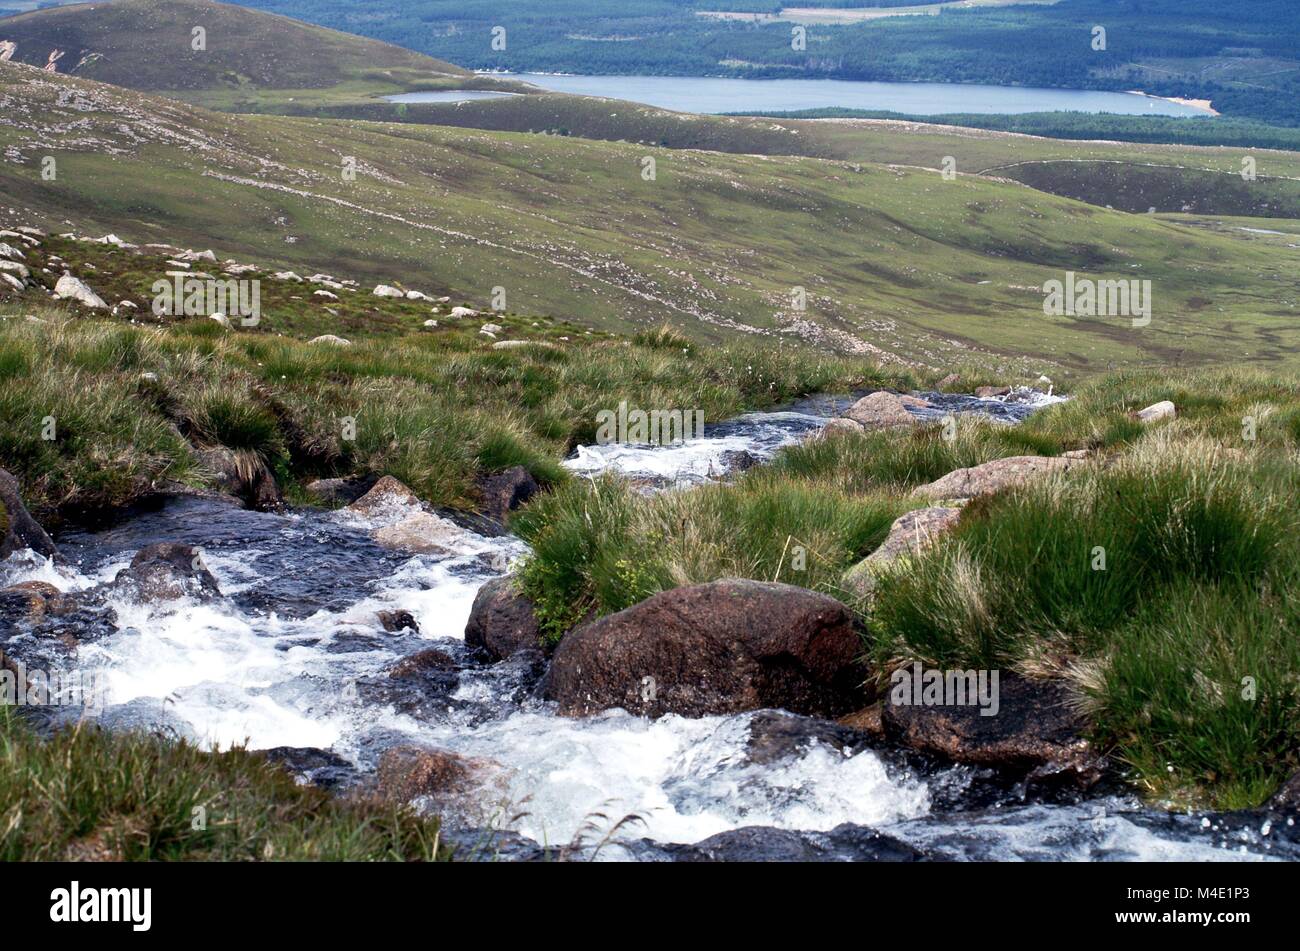 Landscape shot of scottish highlands Stock Photo